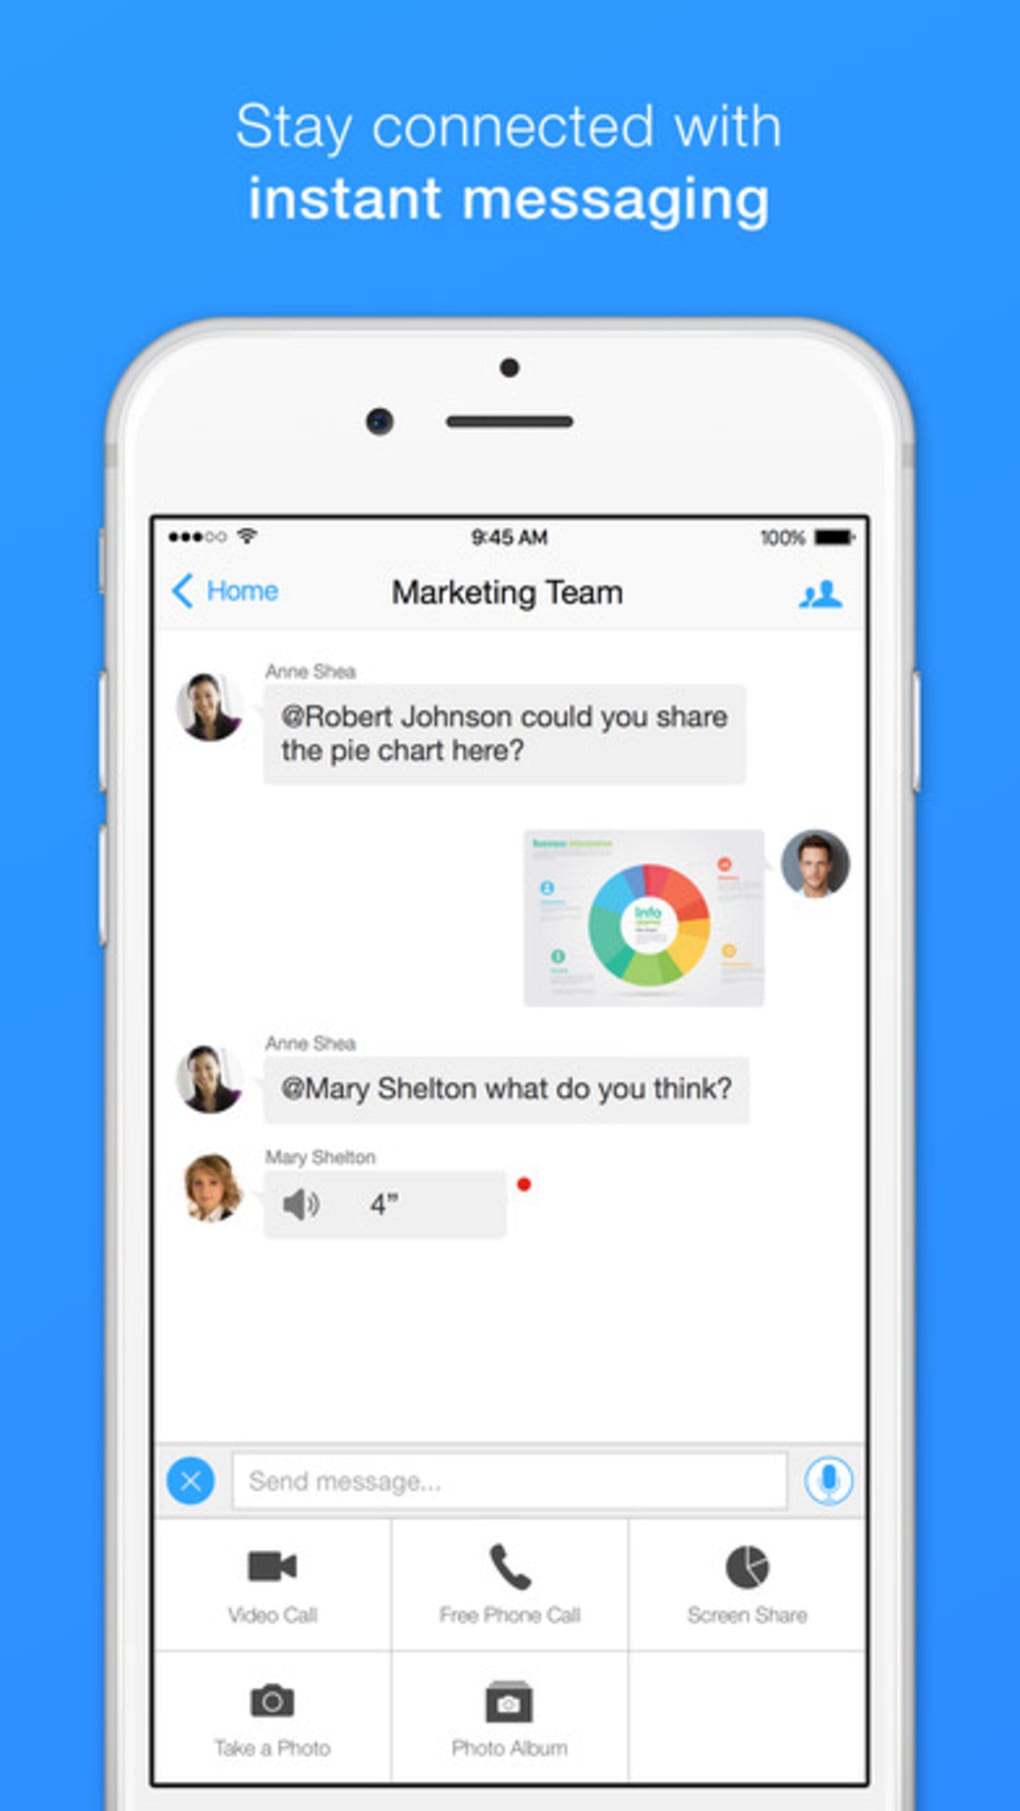 zoom meetings app download